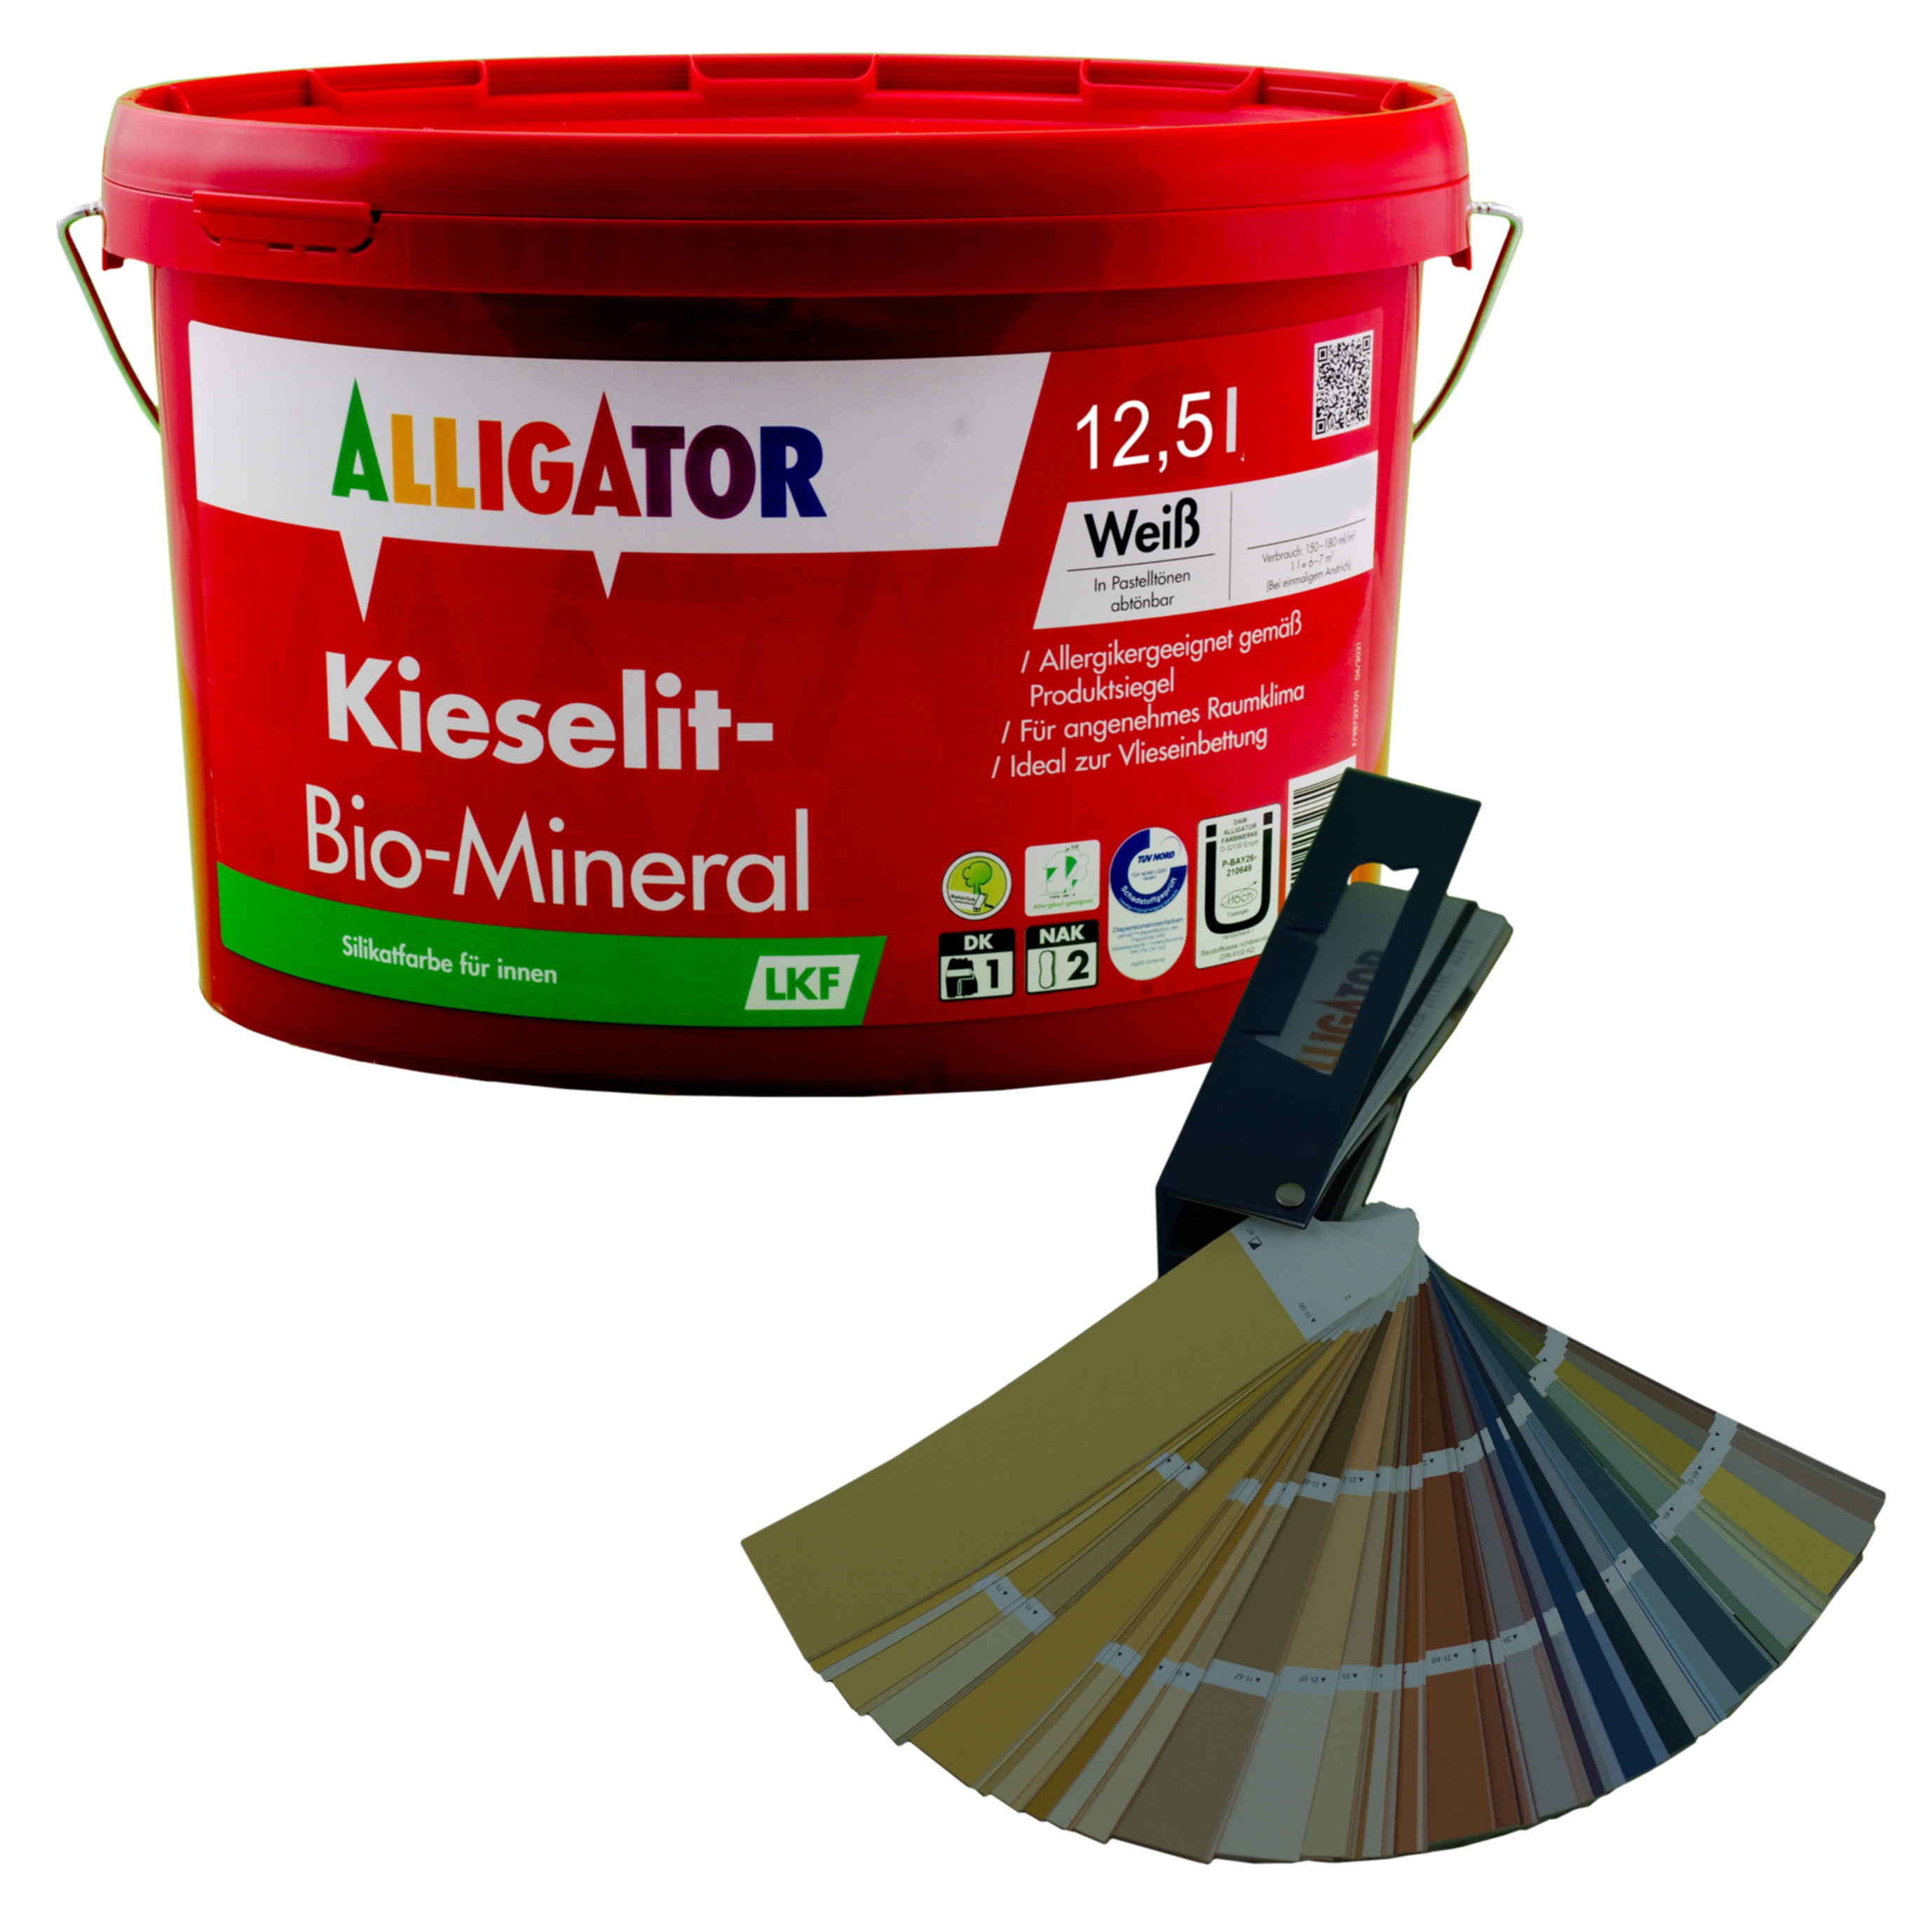 Alligator Kieselit-Bio-Mineral LKF 12,5 ltr. mix PG2 